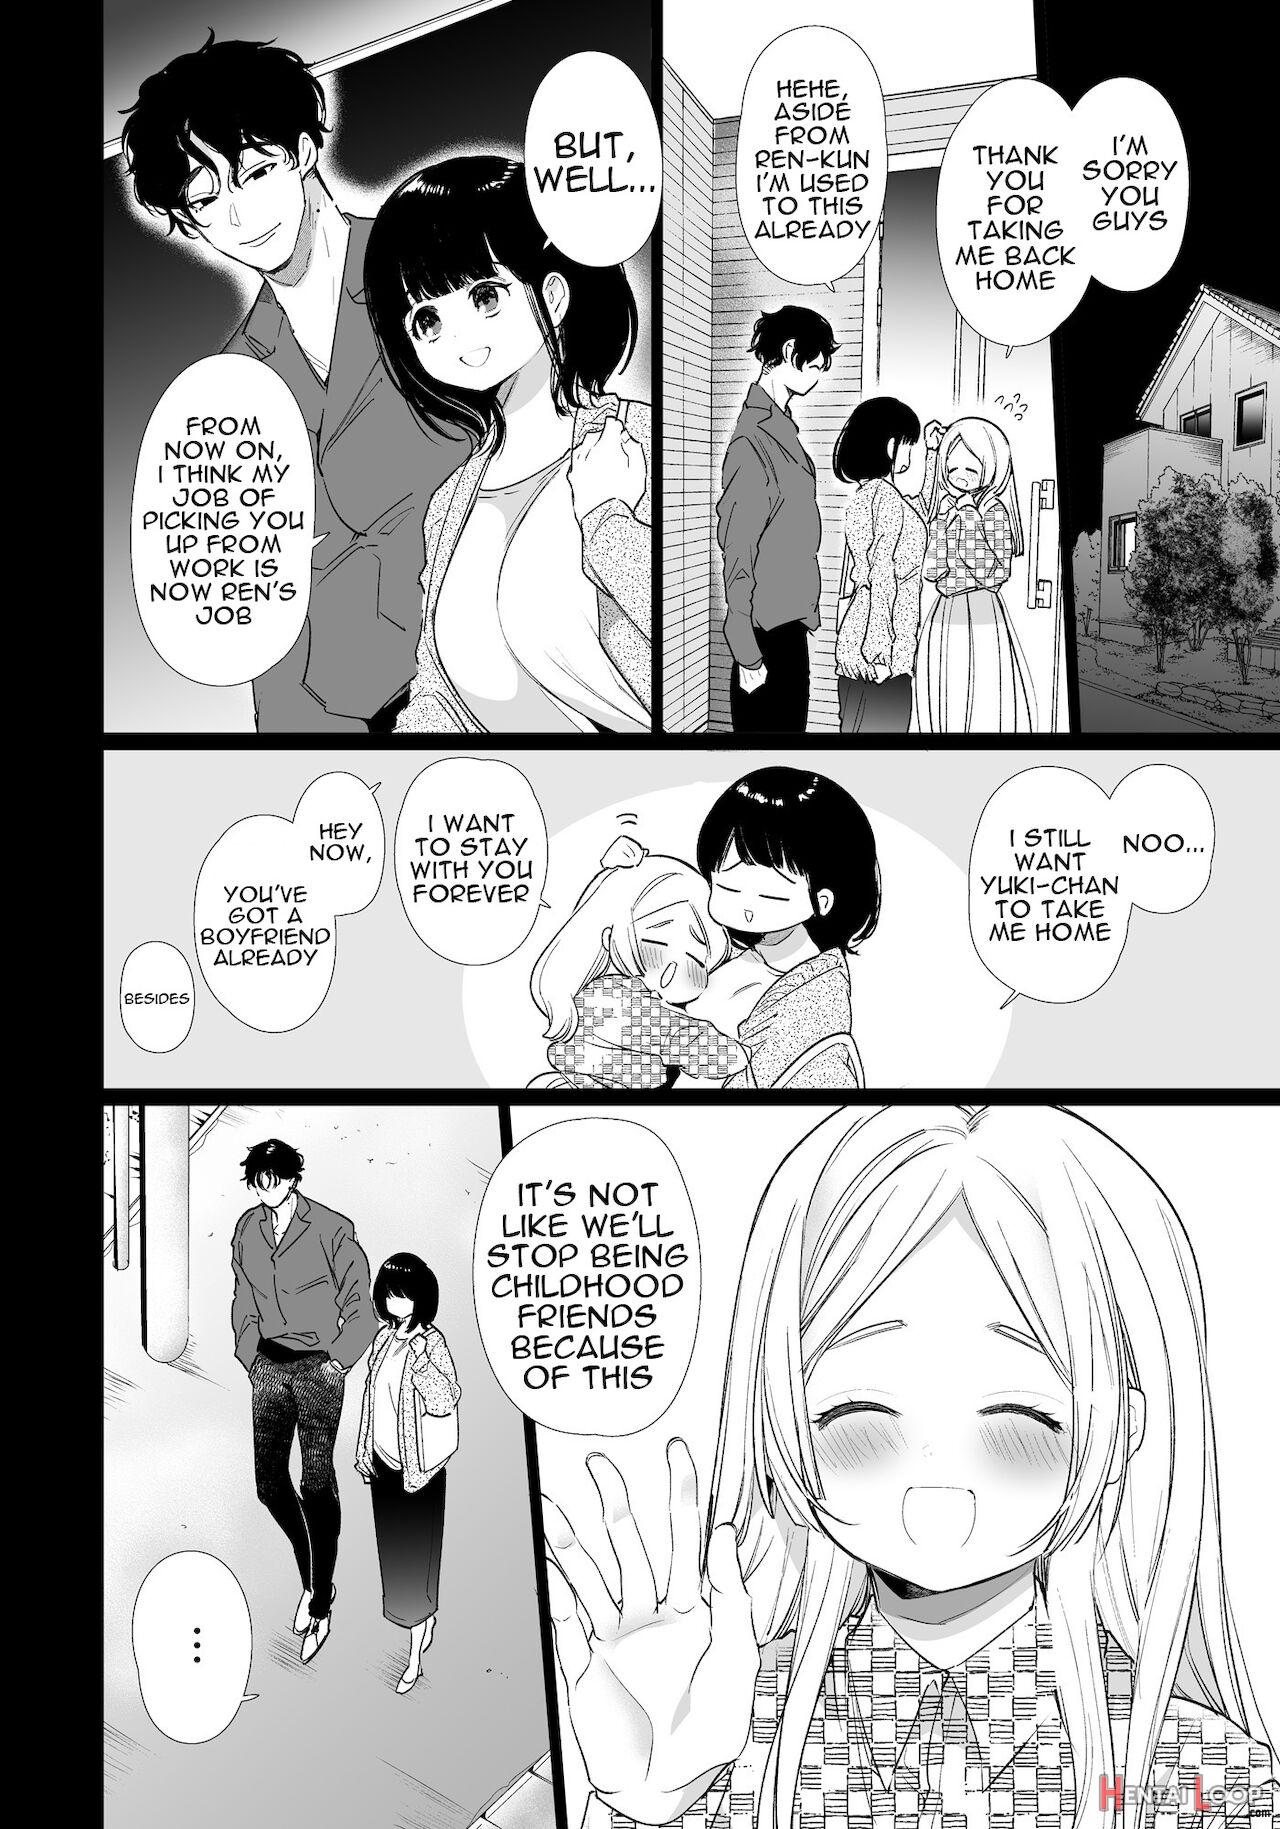 Yuki-chan Ntr page 7